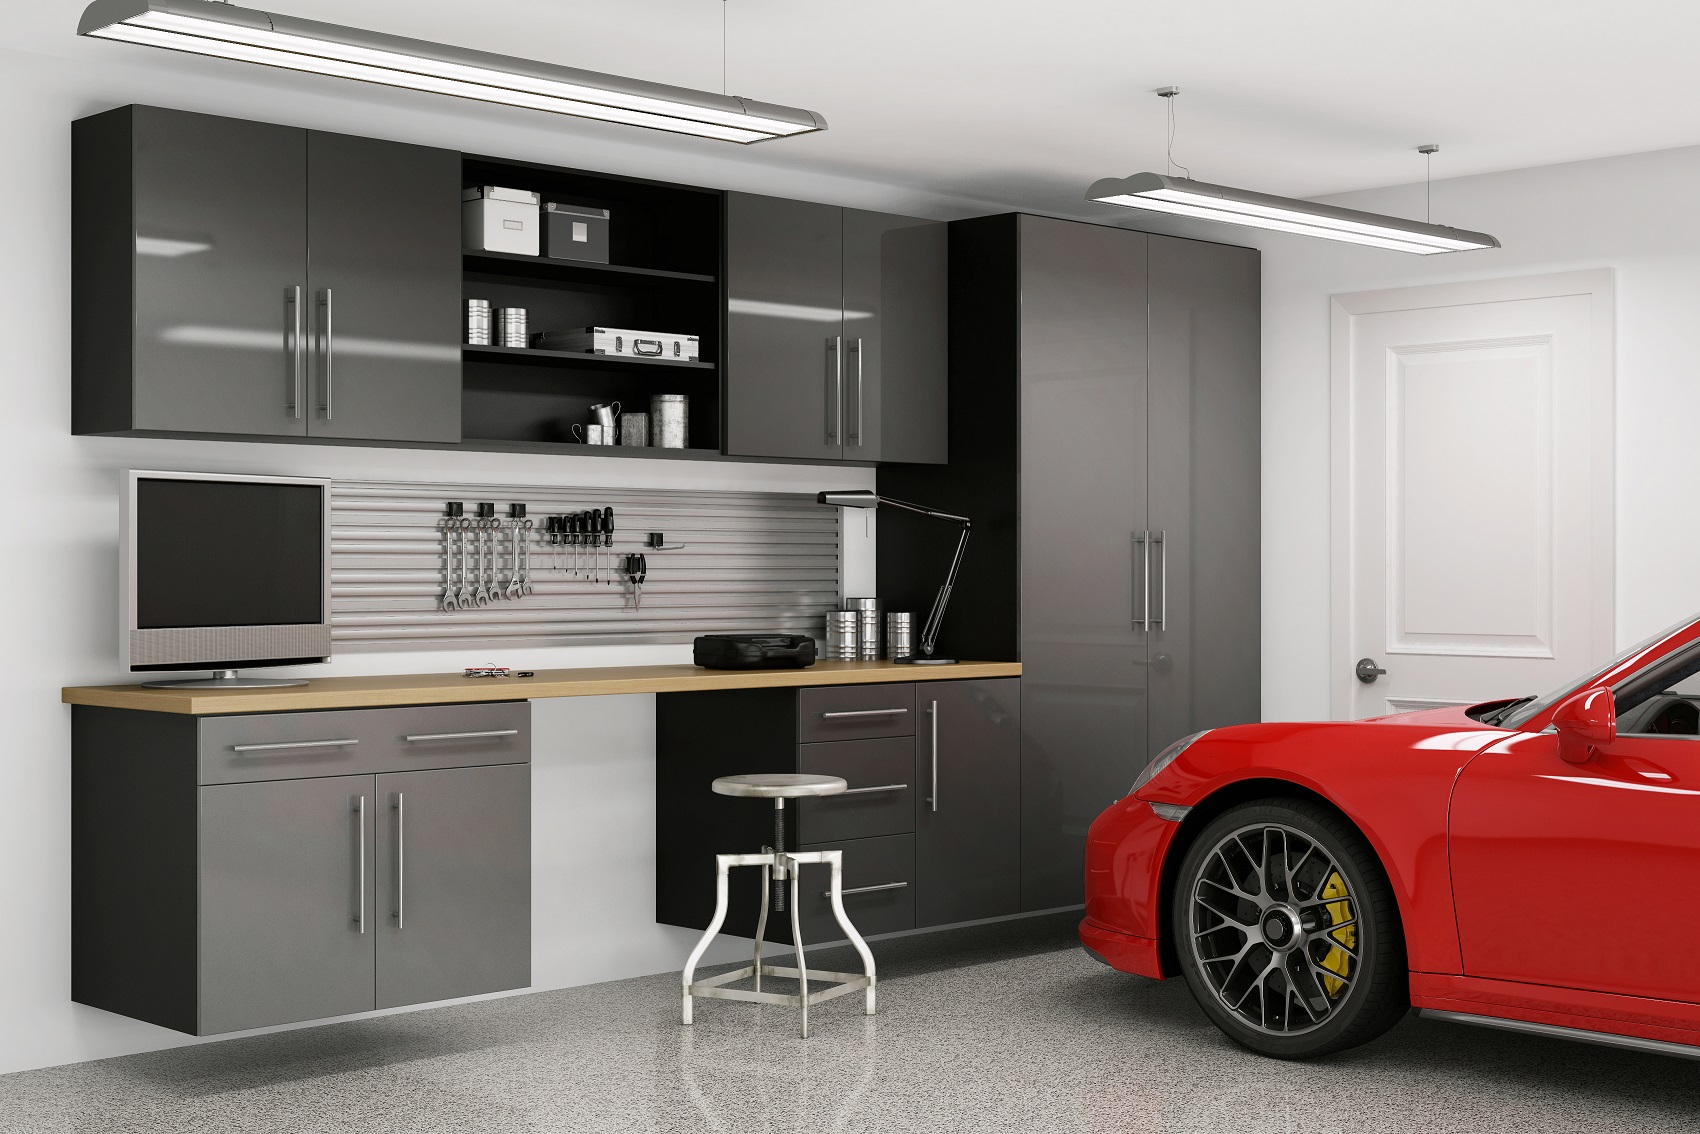 Oakcraft garage cabinetry